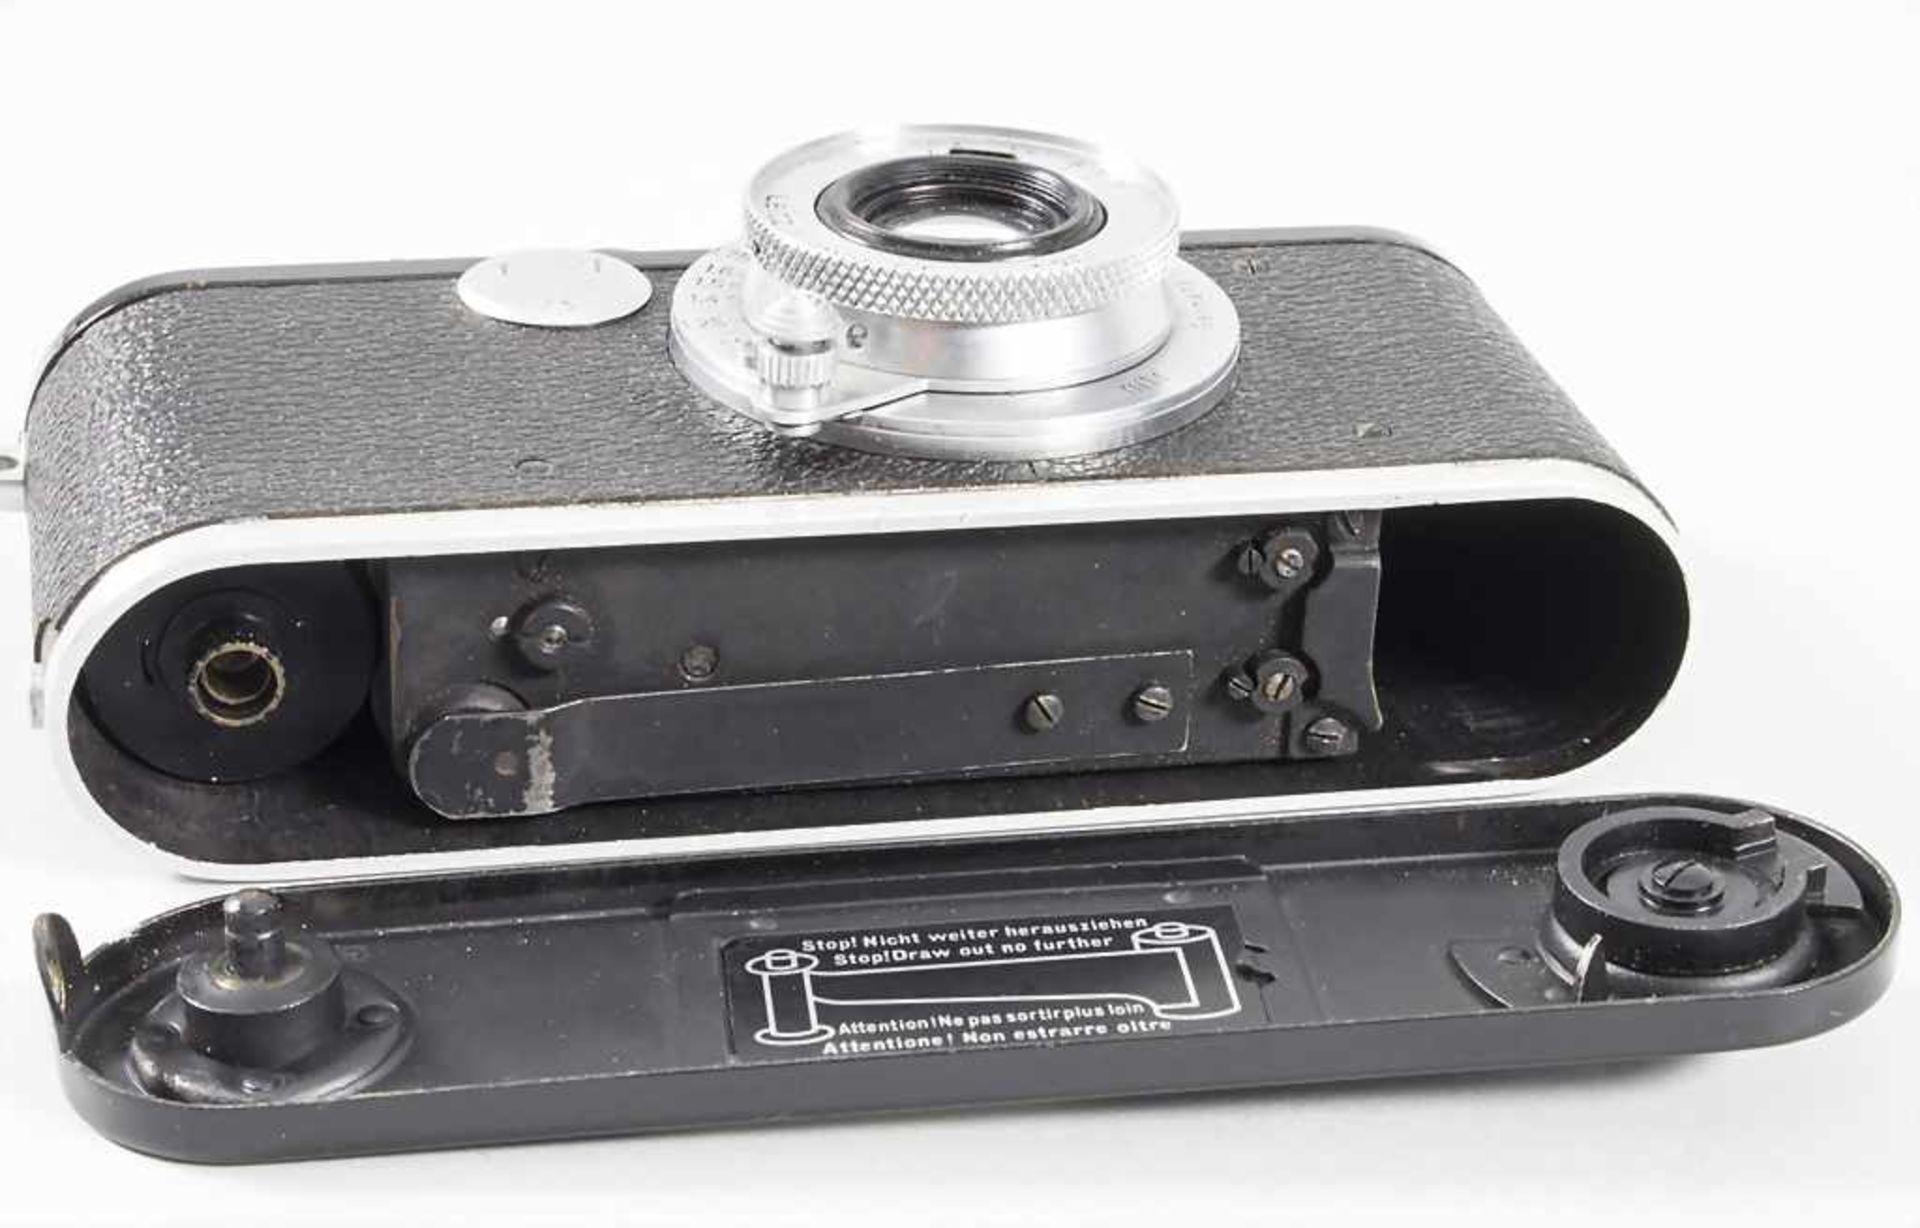 Fotoapparat, Leica, Ernst Leitz, Wetzlar, 1930 - Bild 6 aus 7